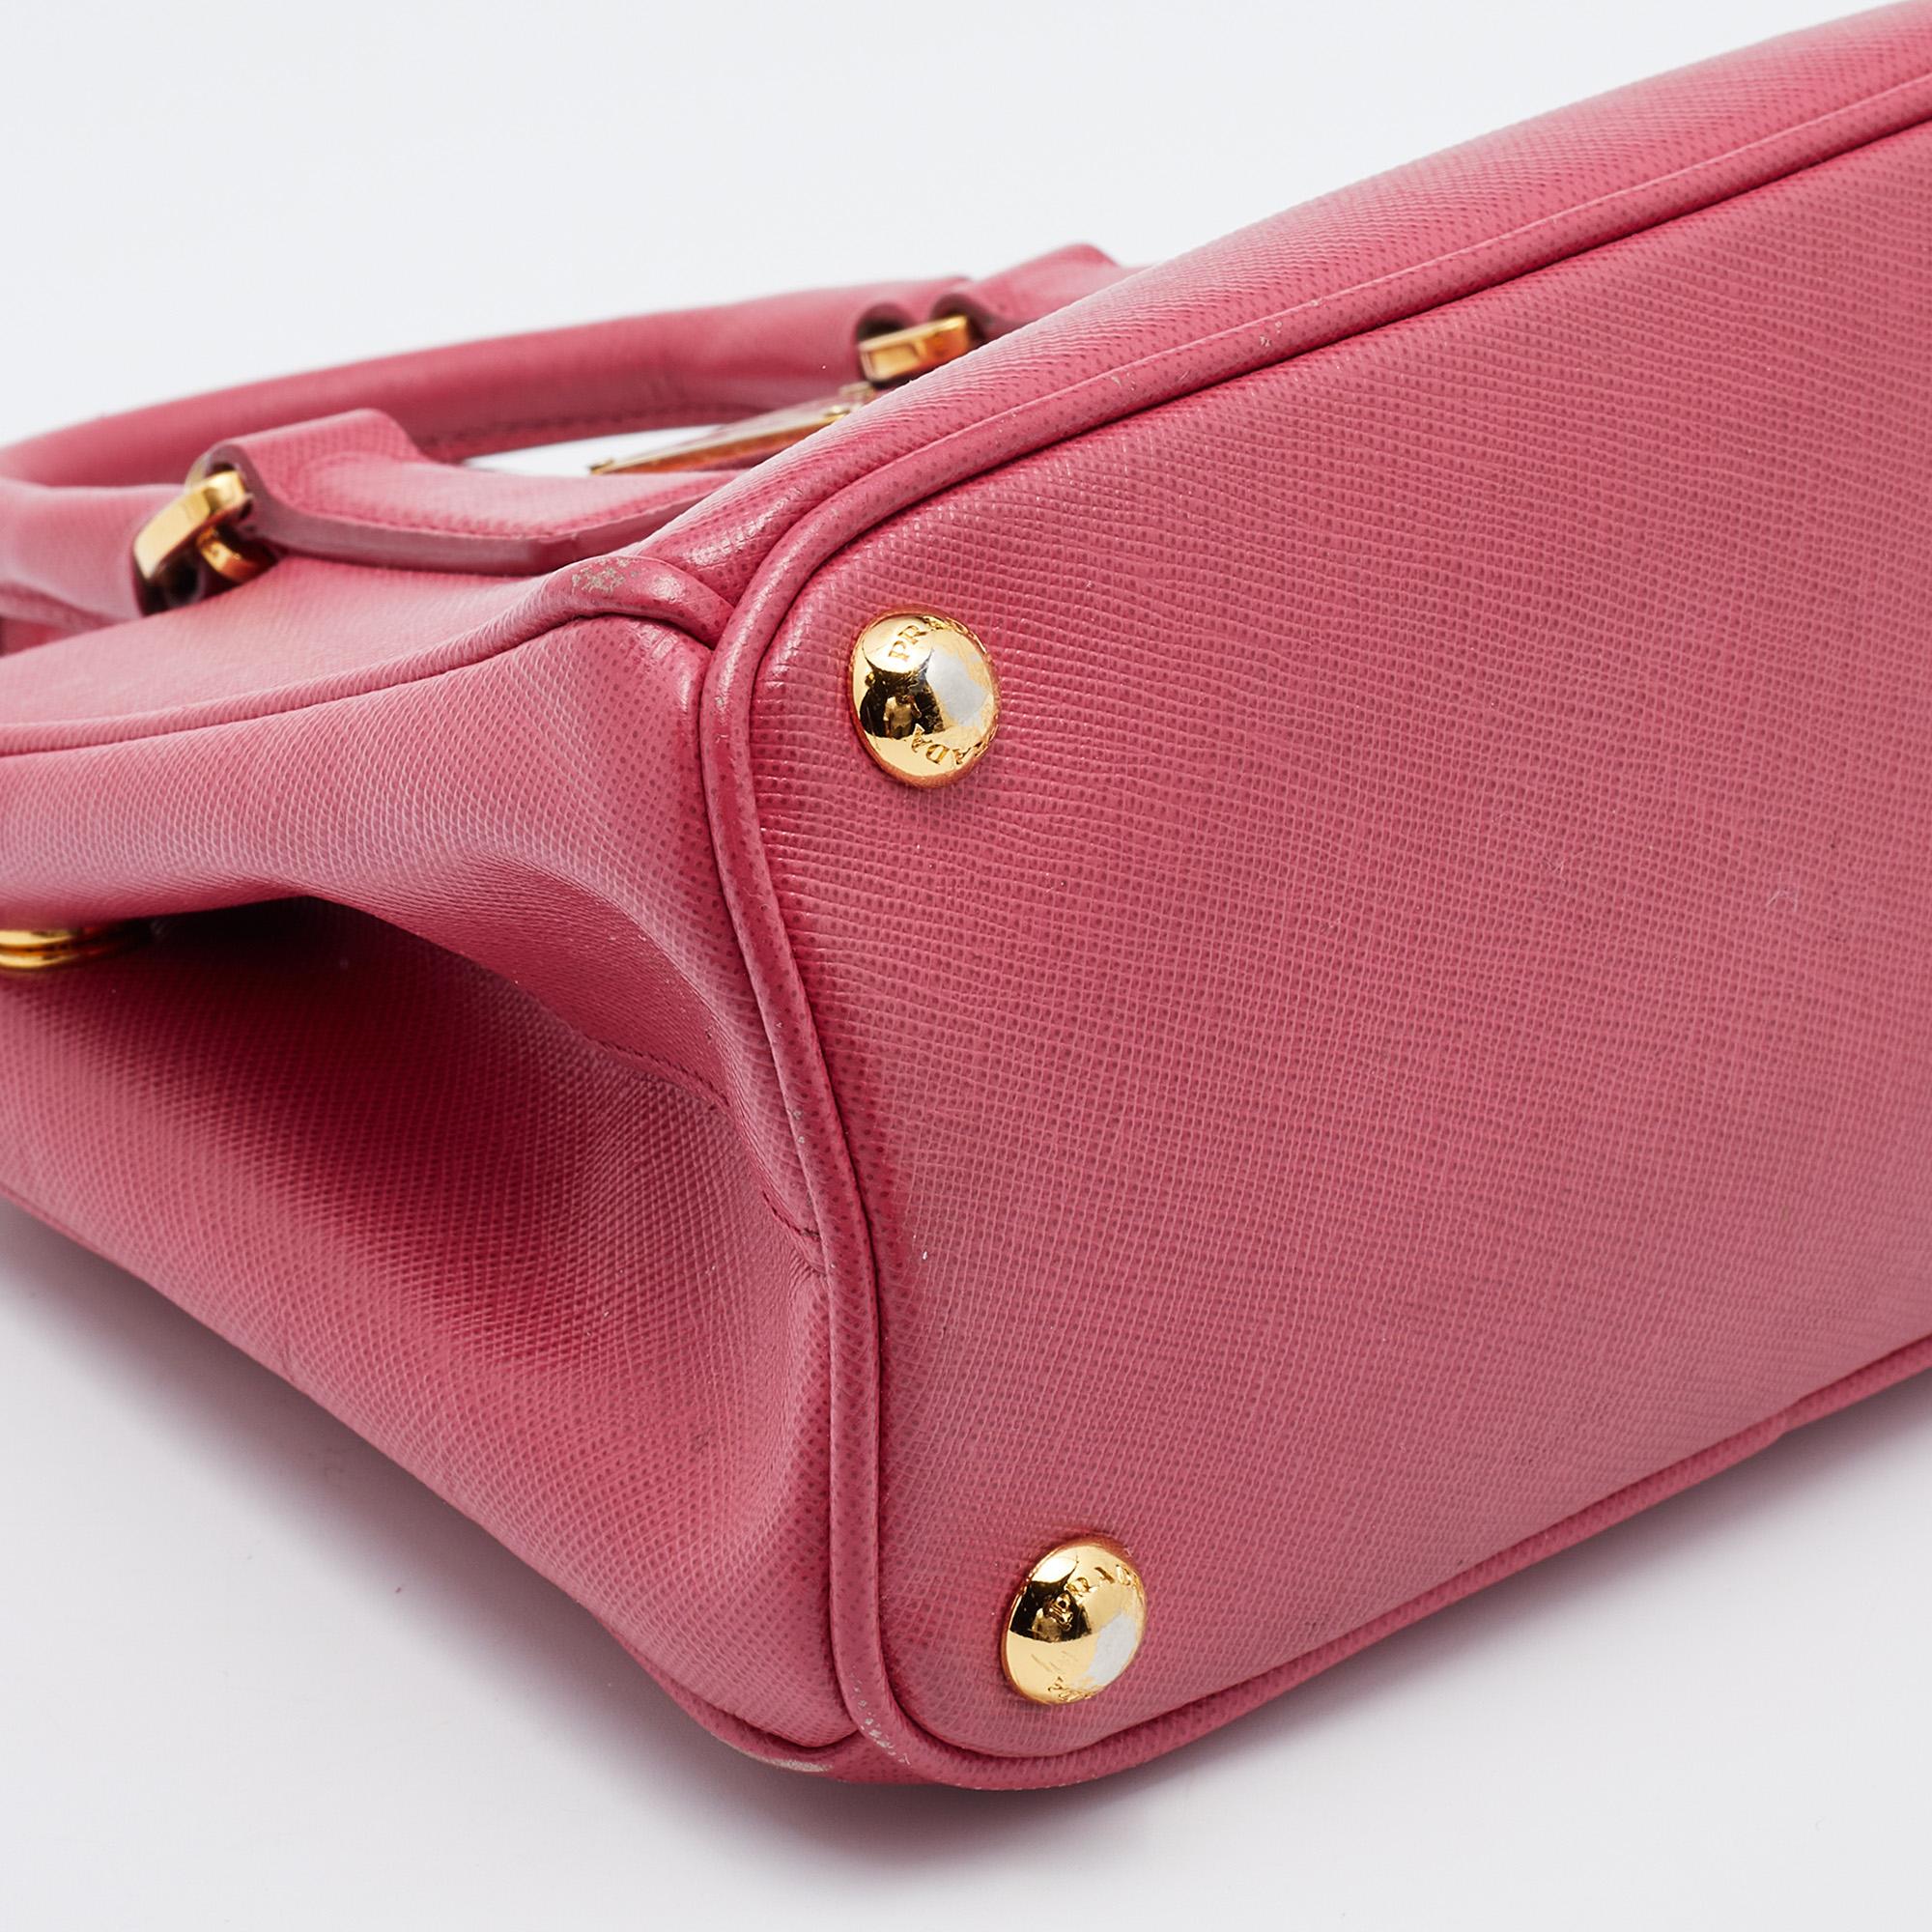 Prada Pink Saffiano Leather Micro Galleria Tote 8